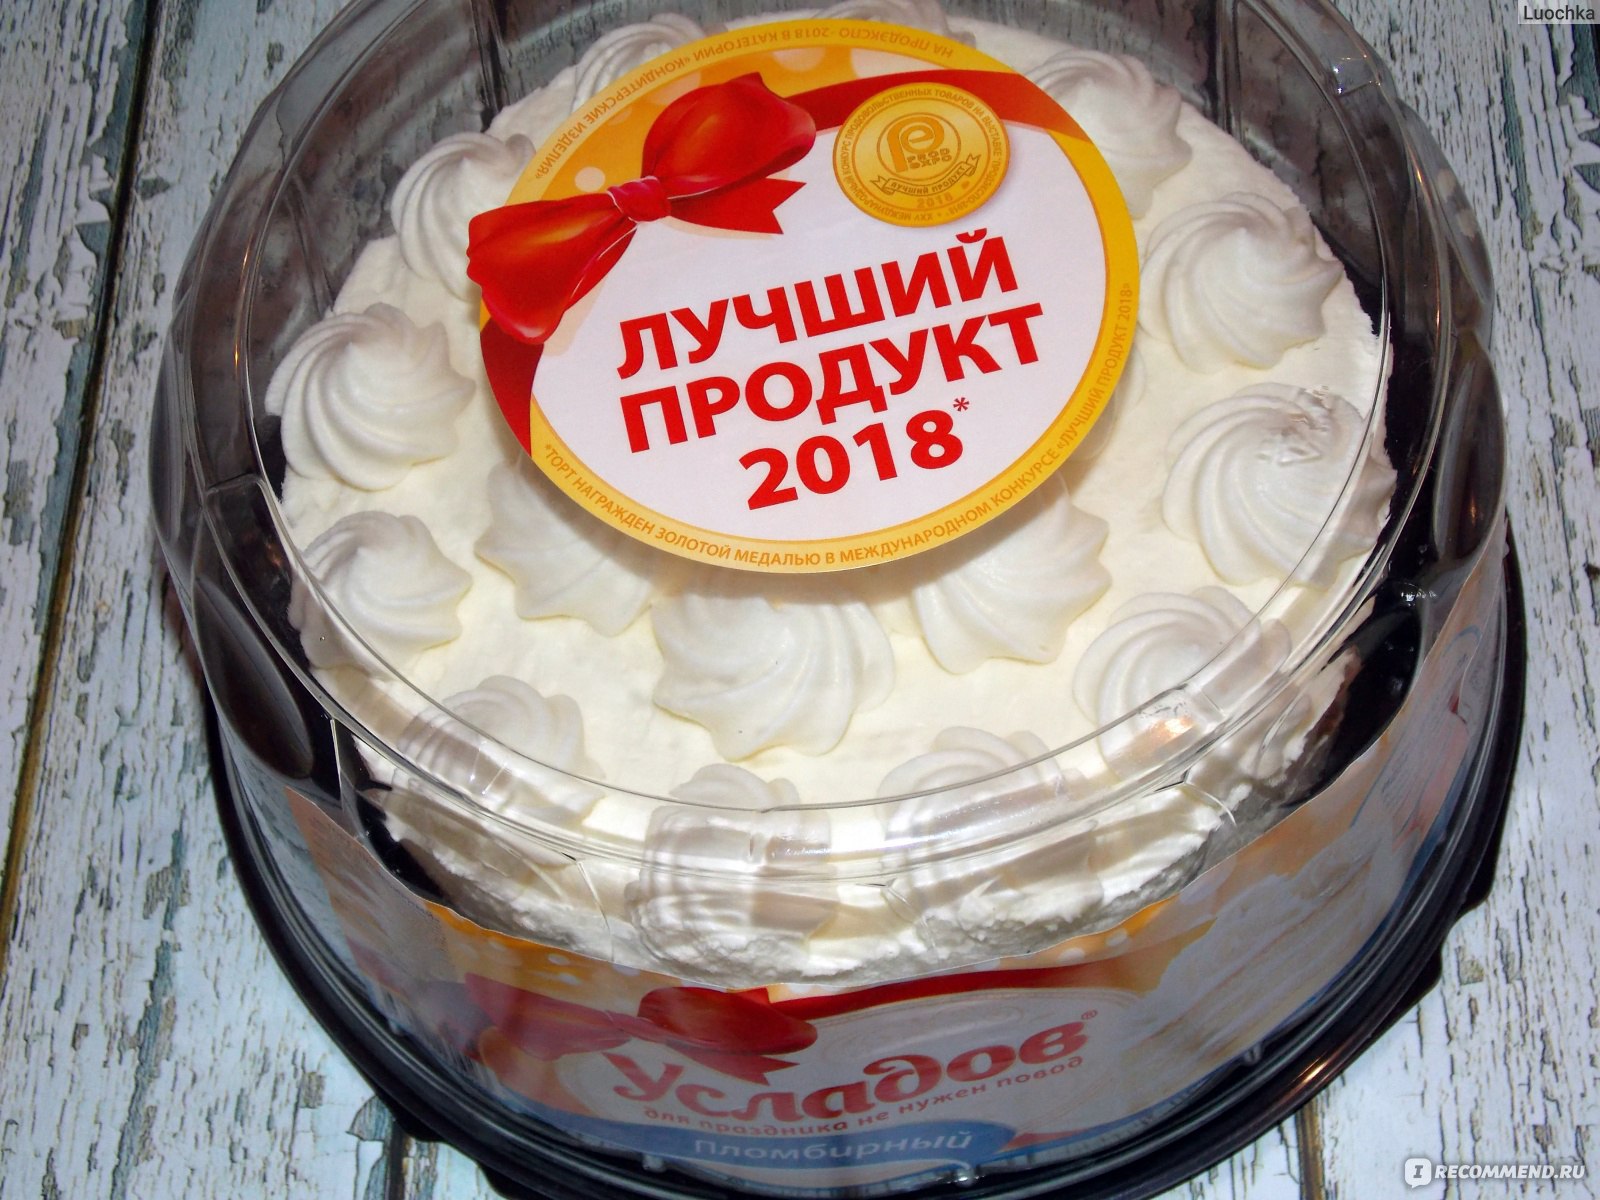 Где Купить Недорого Торт В Москве